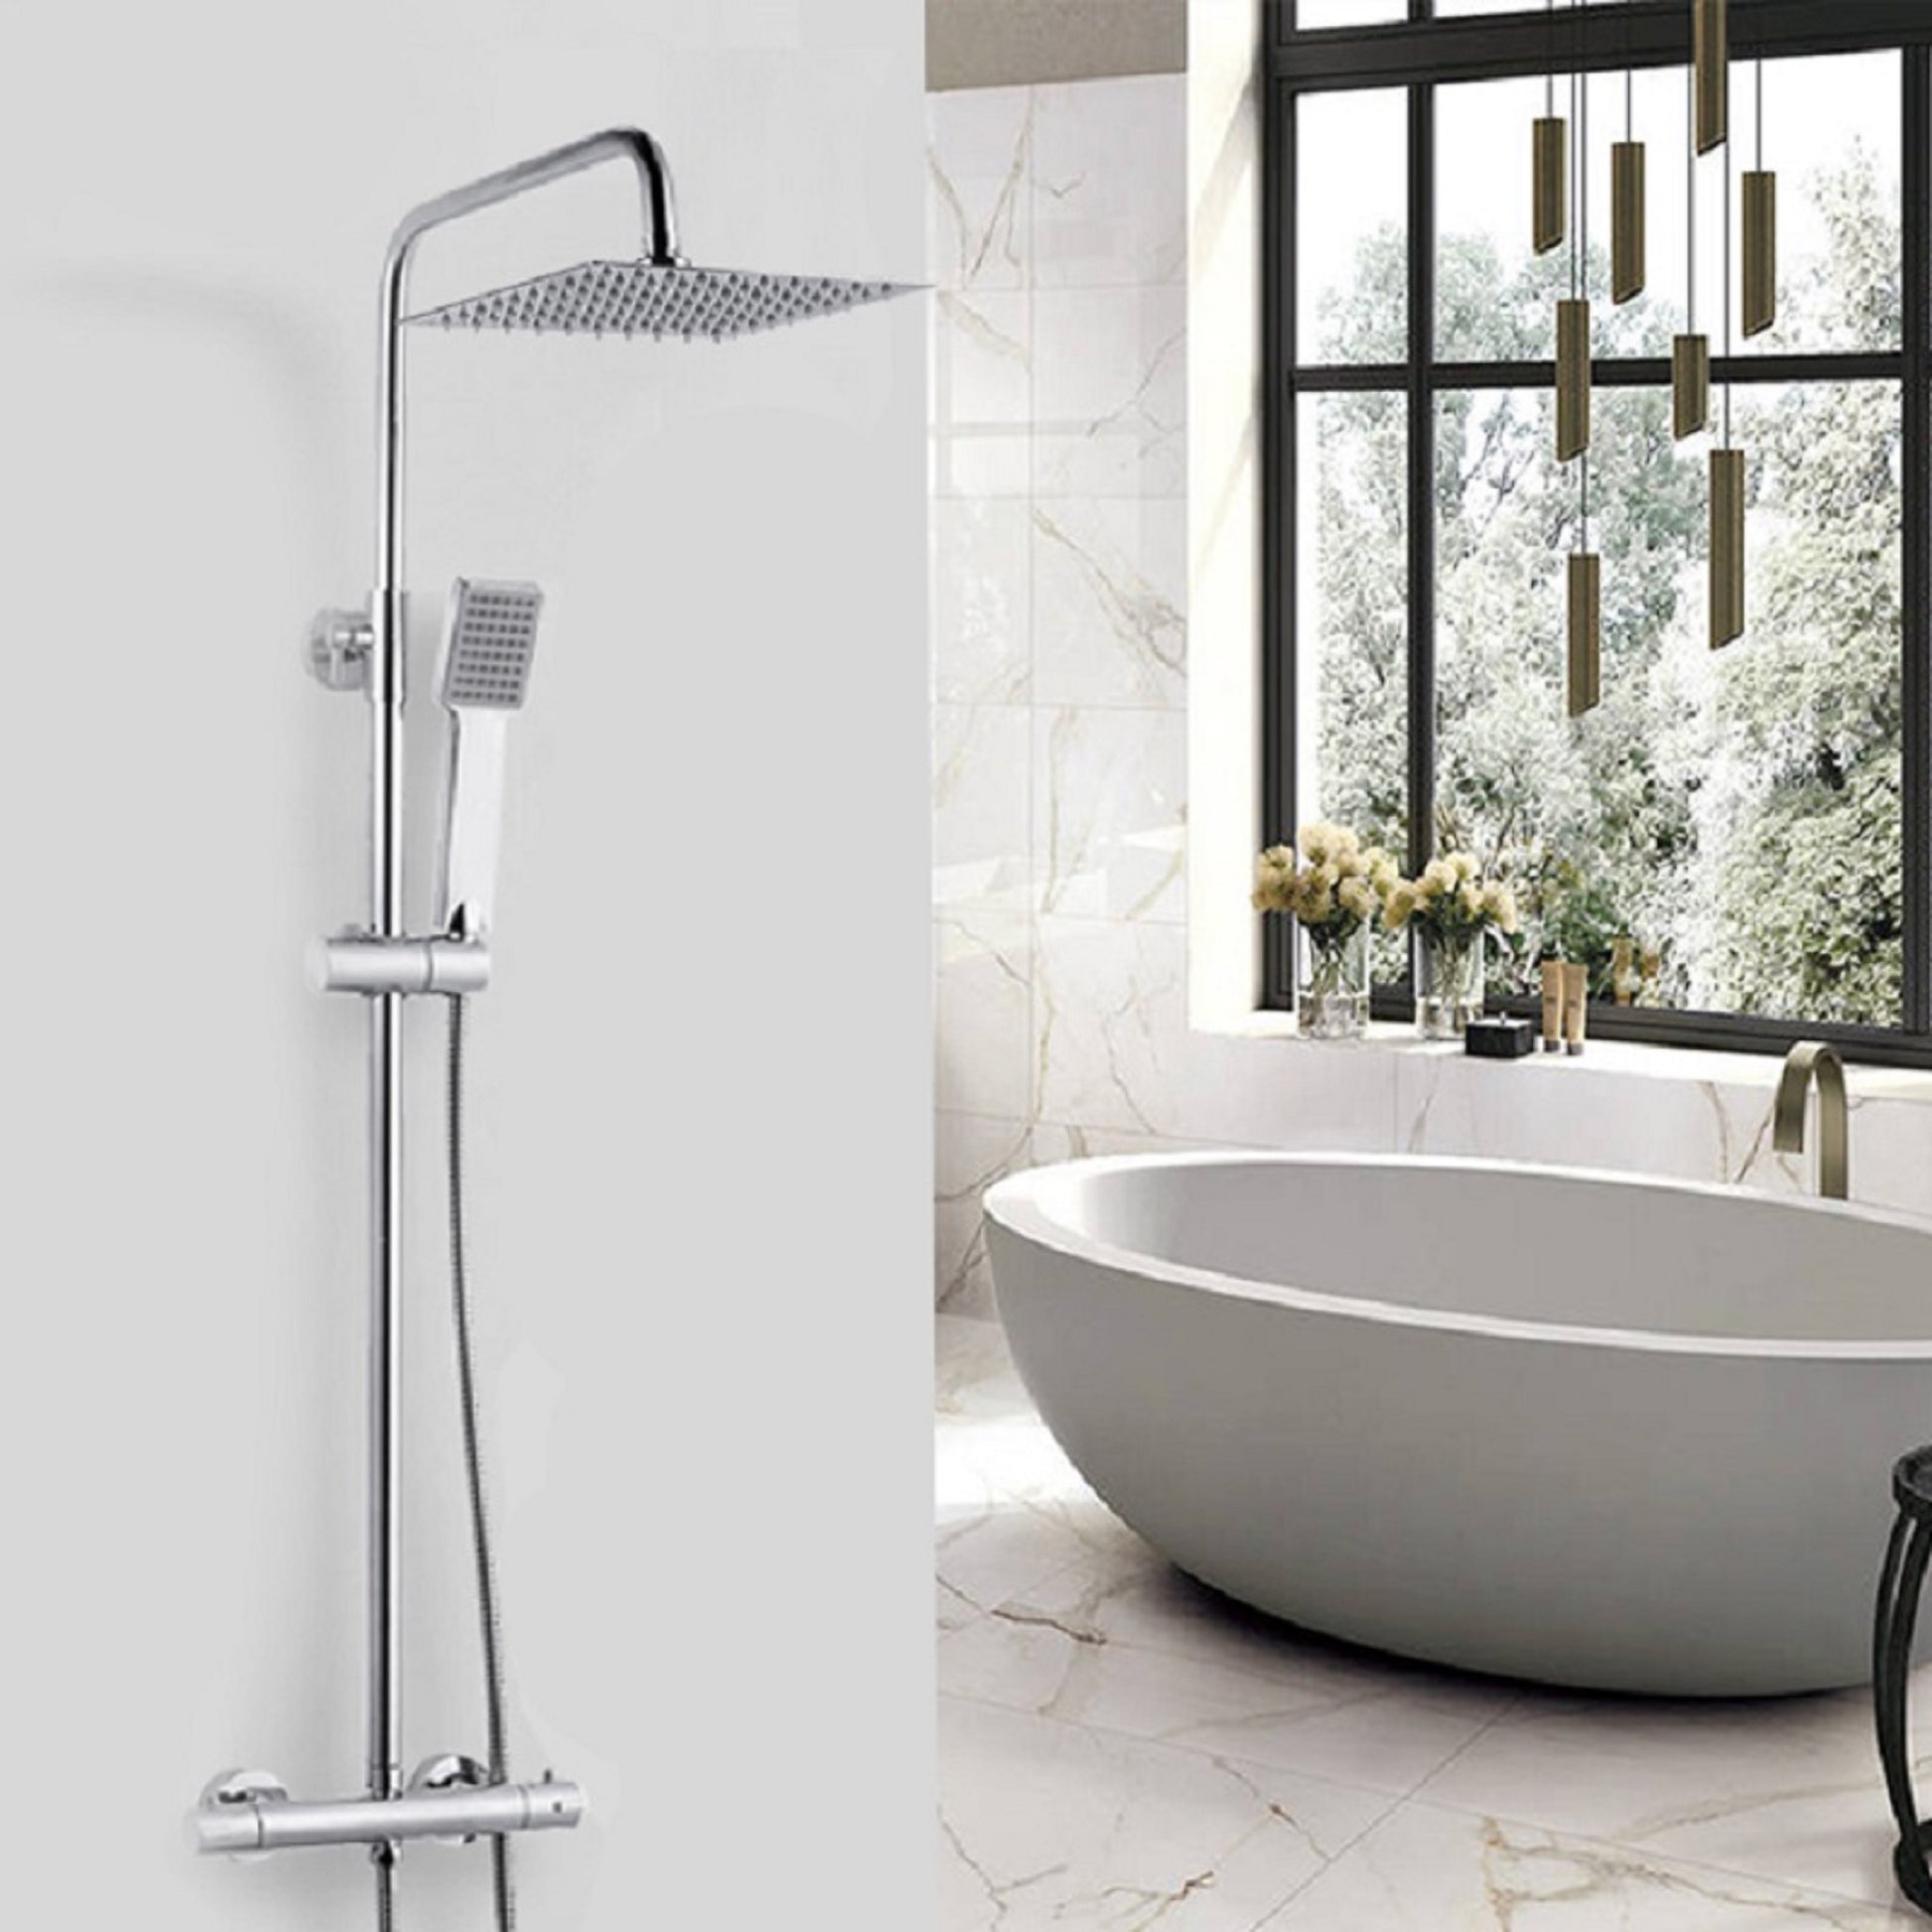 Cómo escoger la columna de ducha perfecta?